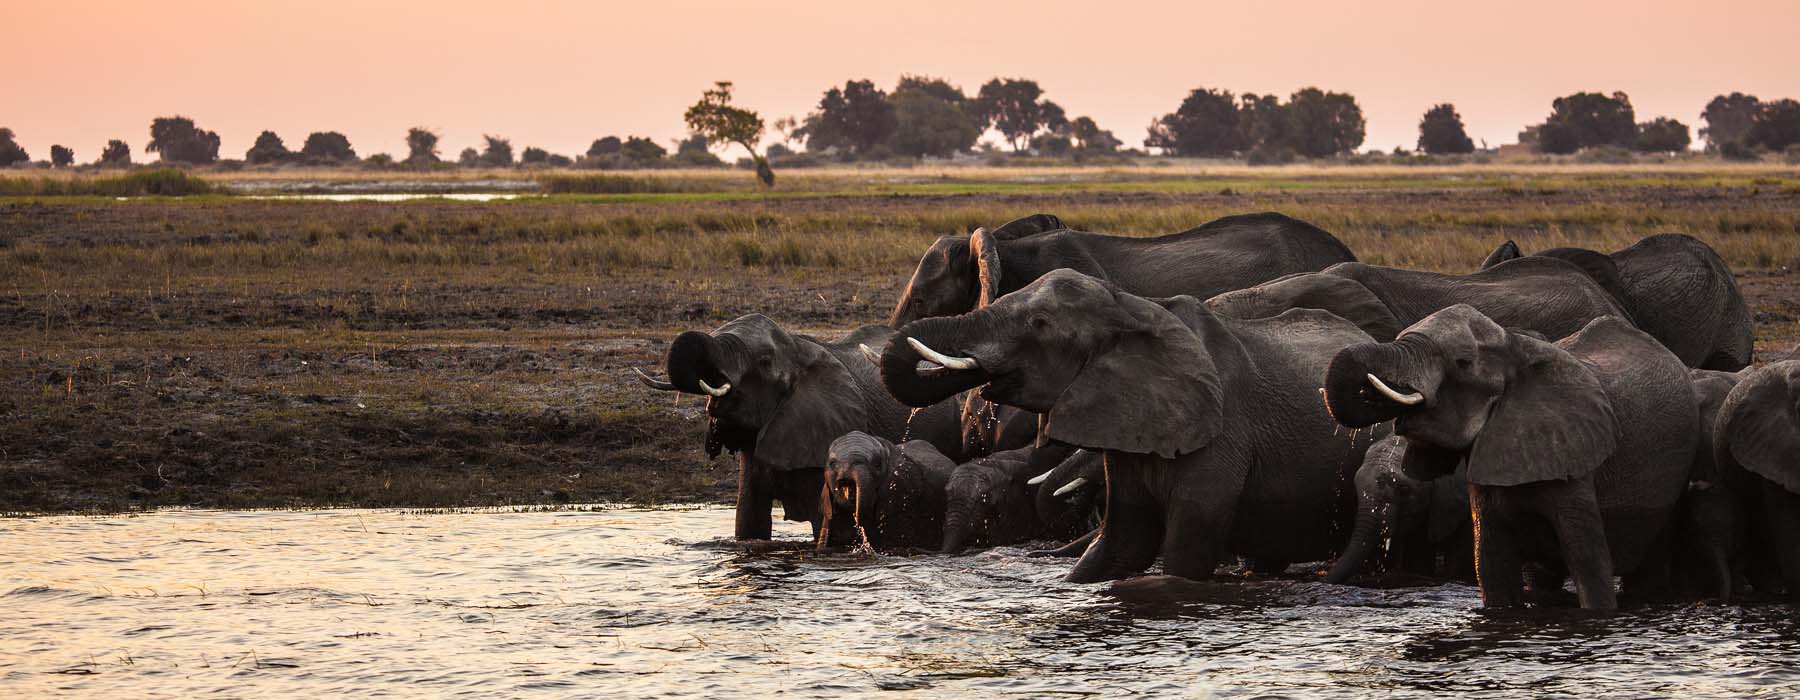 Botswana<br class="hidden-md hidden-lg" /> Riding Safaris